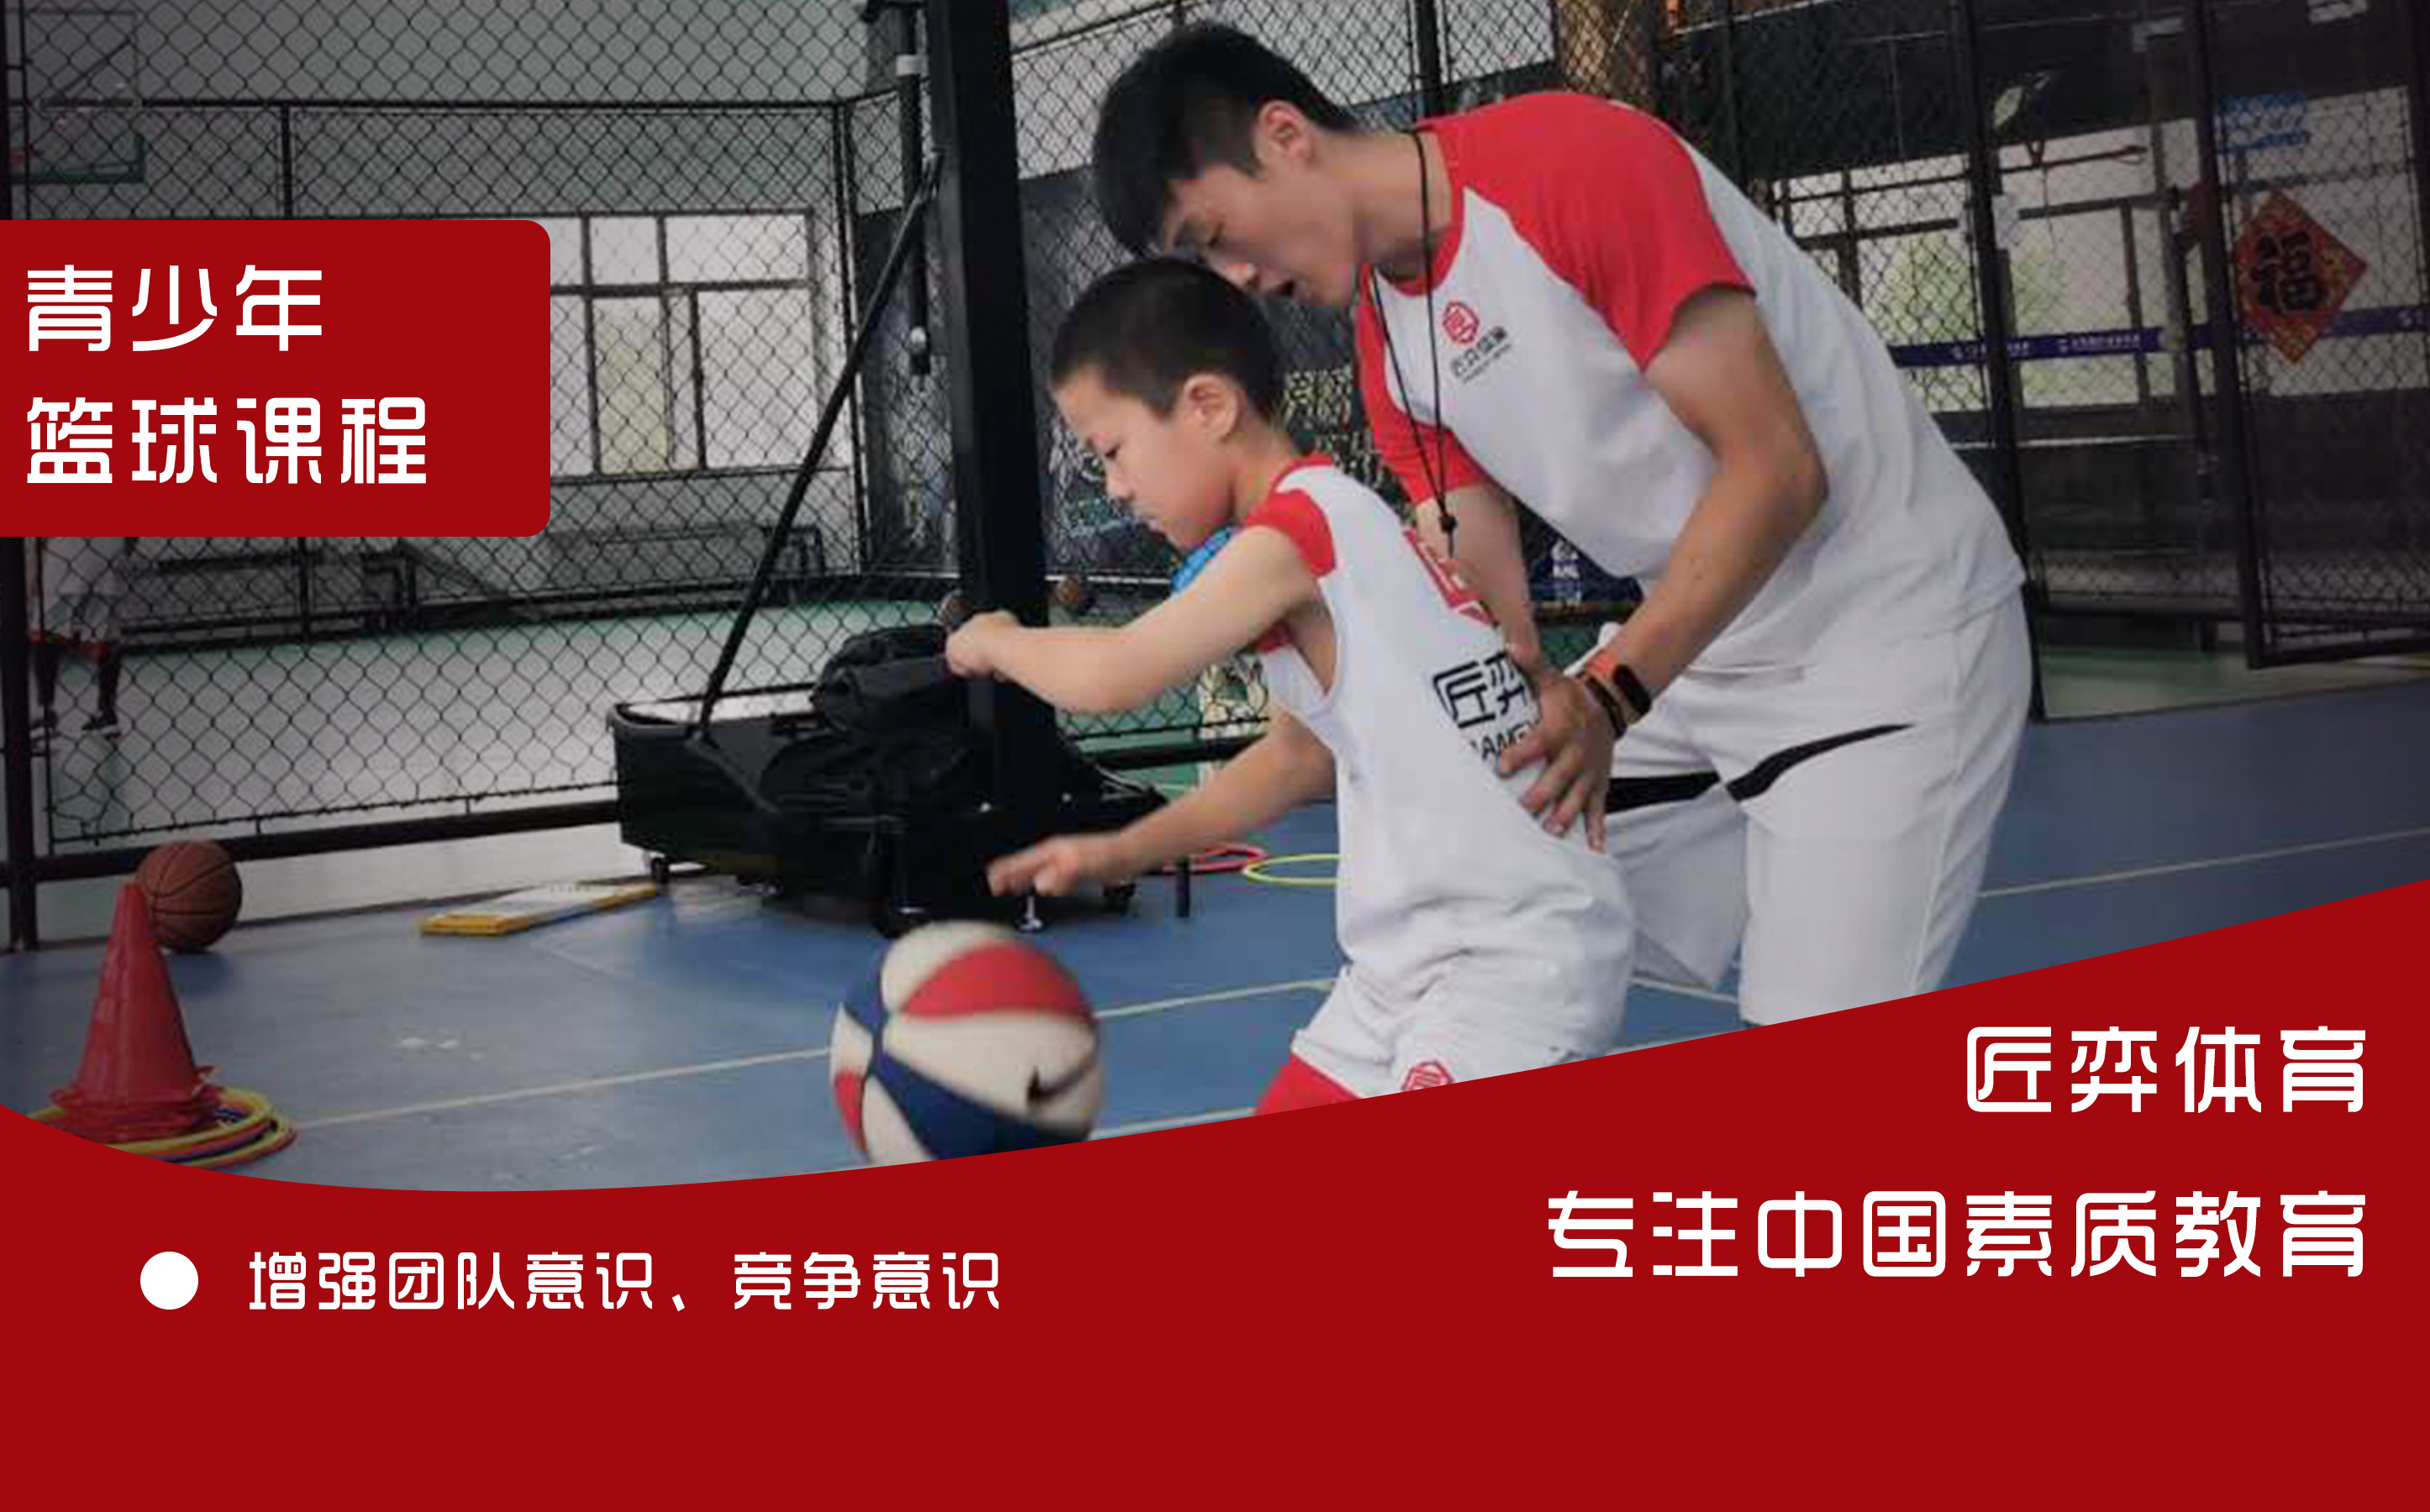 上海匠弈体育7-12岁青少年快乐篮球营